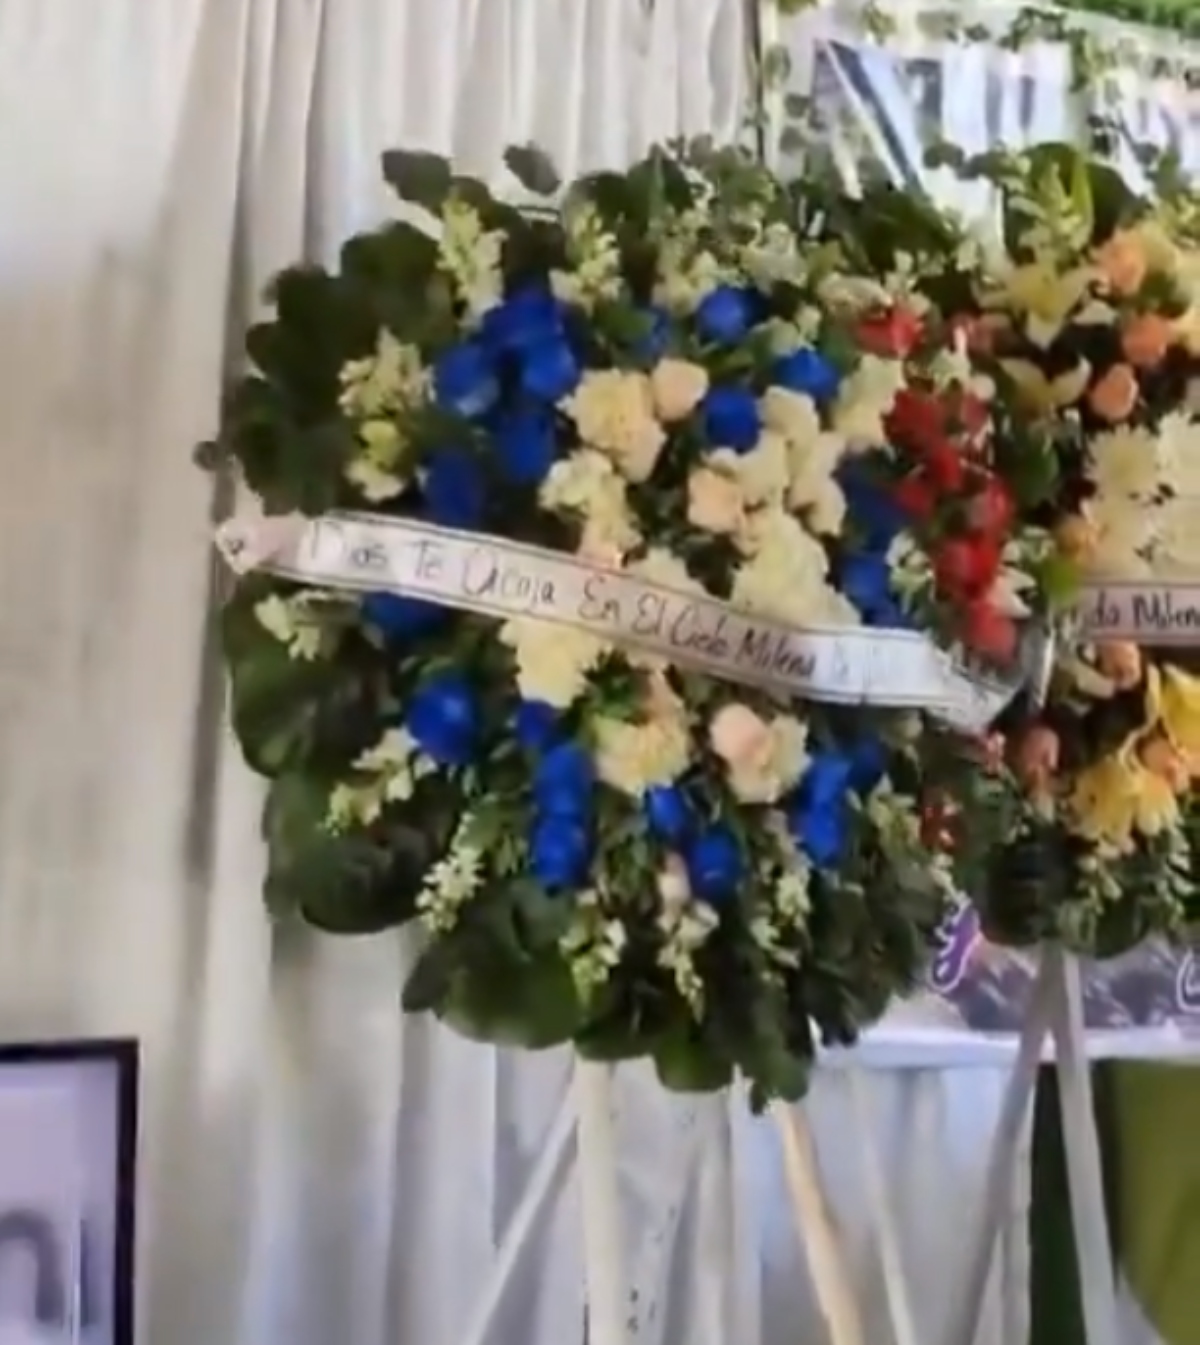  VÍDEO: Coroa de flores se mexe em velório; “Obrigada, tia, por se manifestar